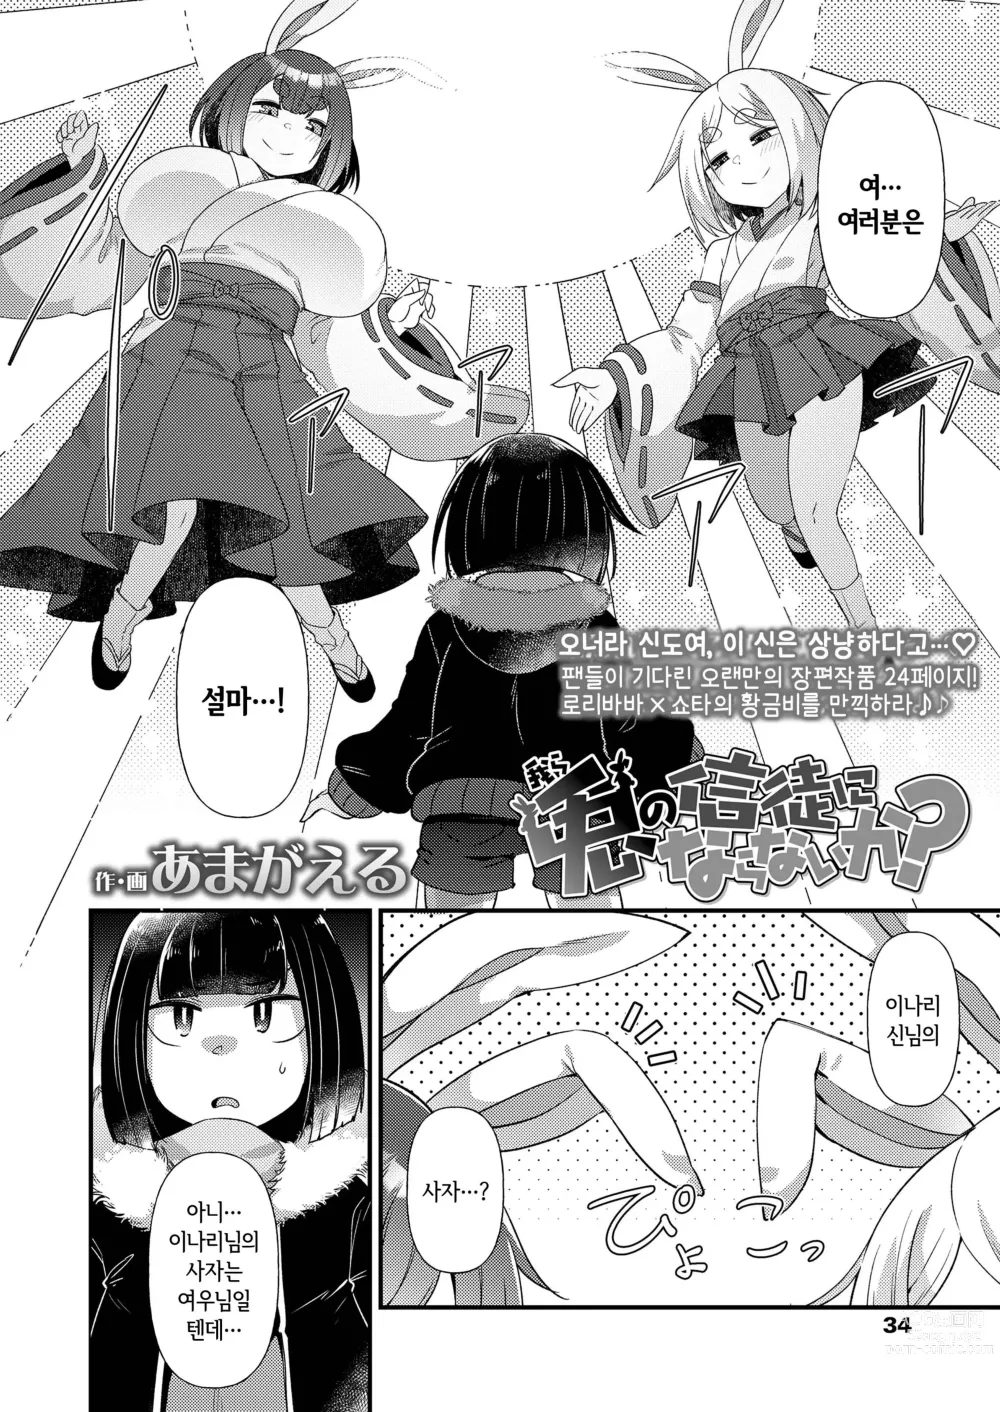 Page 2 of doujinshi 토끼의 신도가 되지 않겠는가?